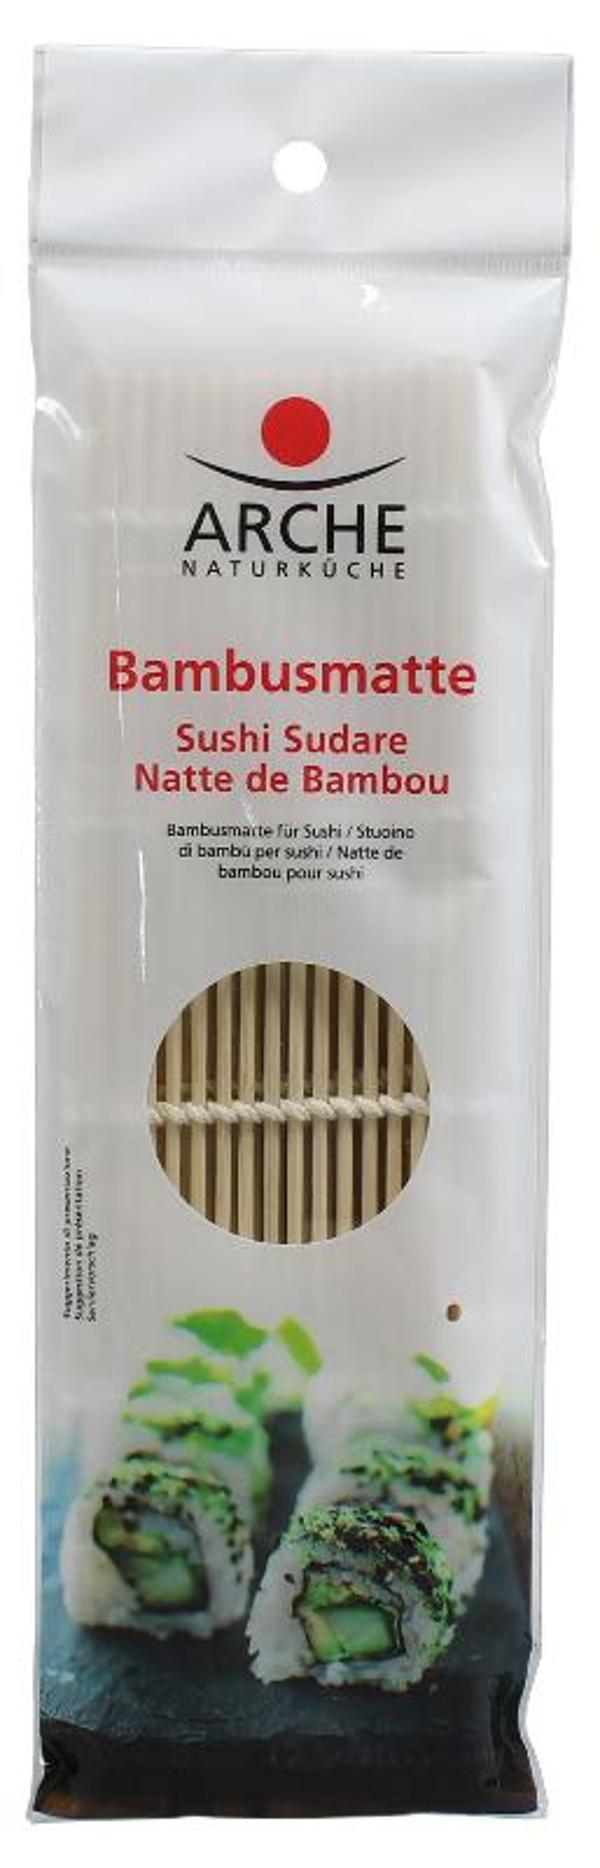 Produktfoto zu Bambusmatte für Sushi-Rollen